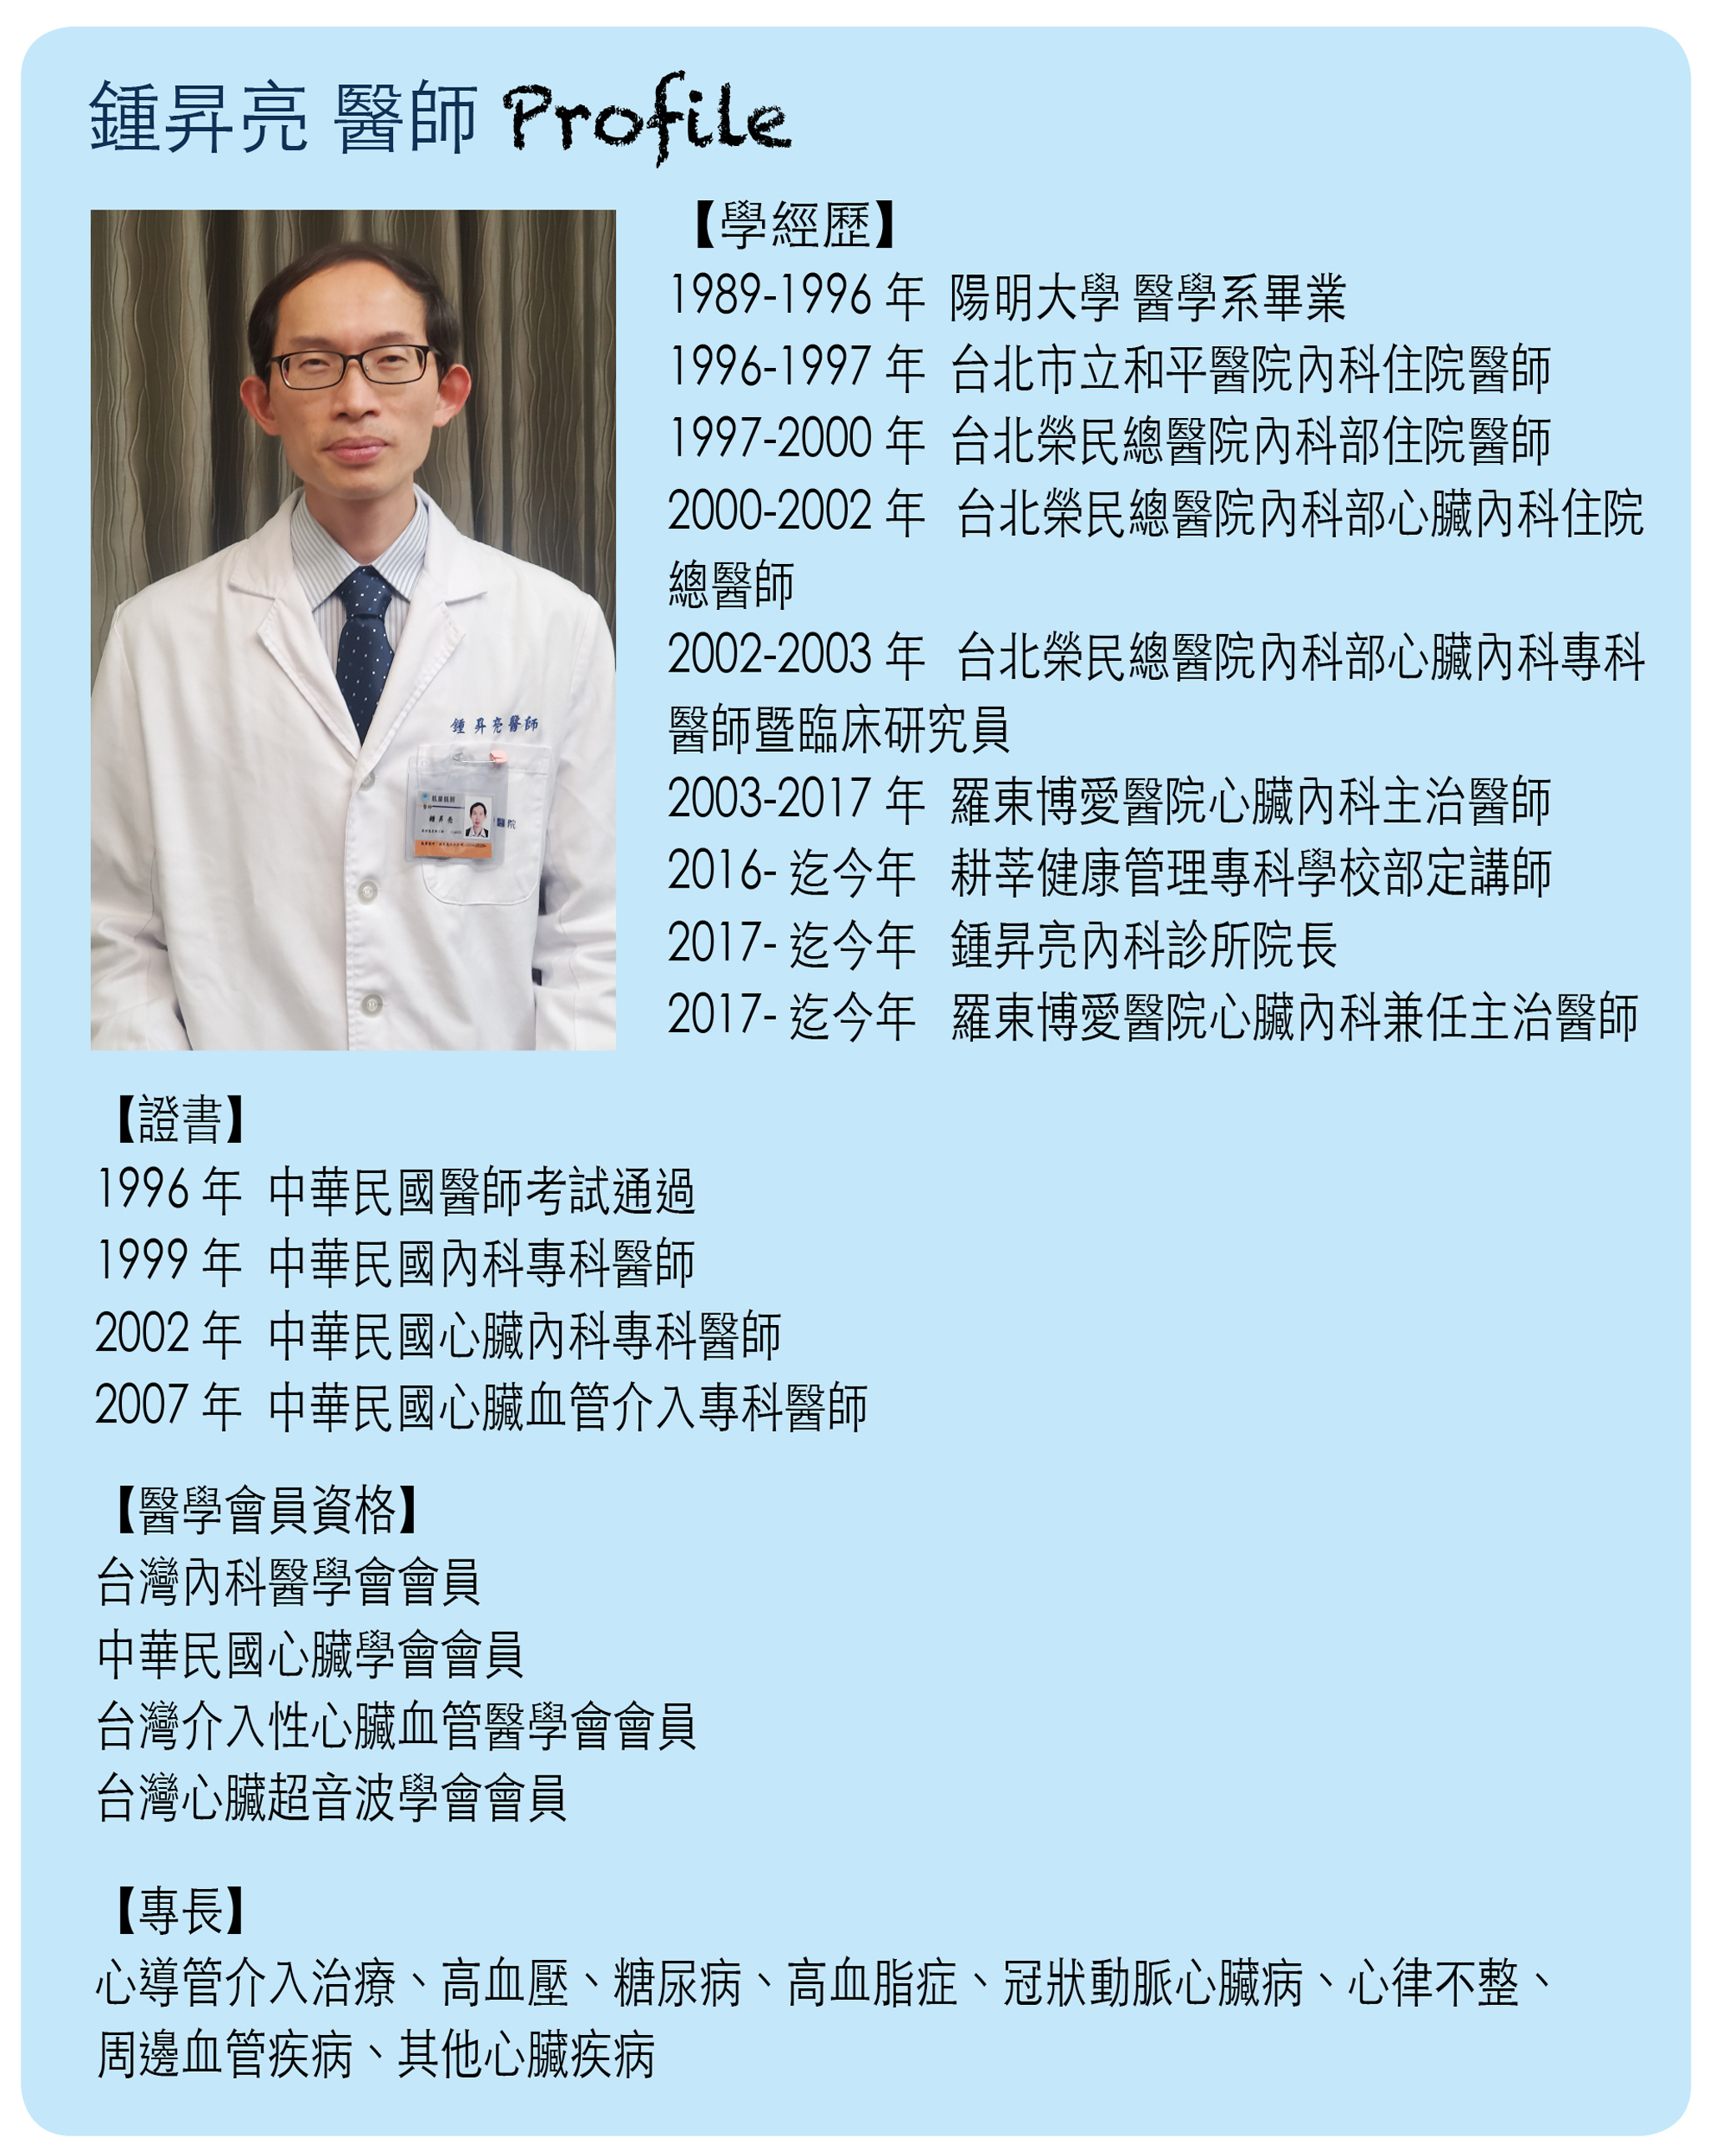 鍾昇亮內科診所鍾昇亮醫師小檔案。